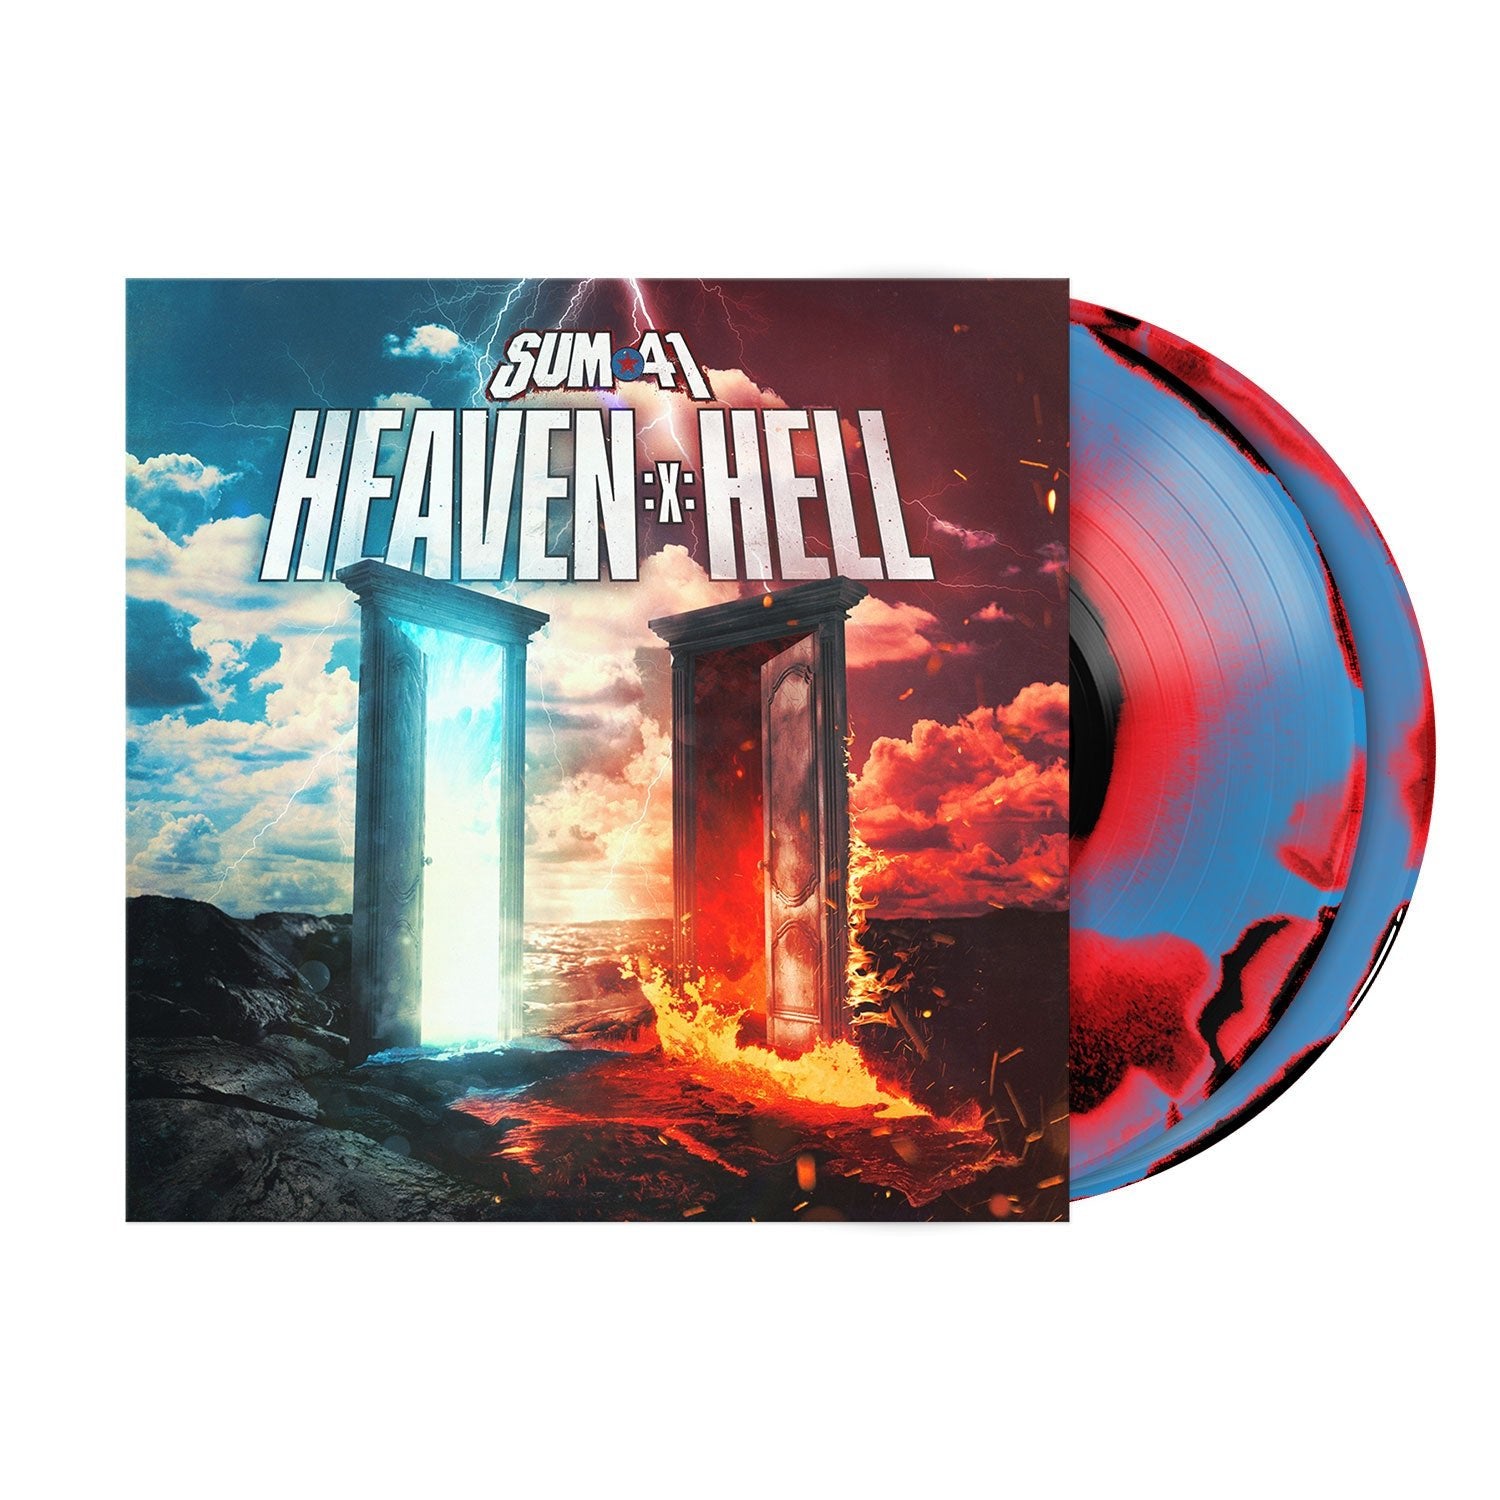 Heaven :X: Hell US Exclusive 3-Color Smush Double Vinyl LP – Rise 